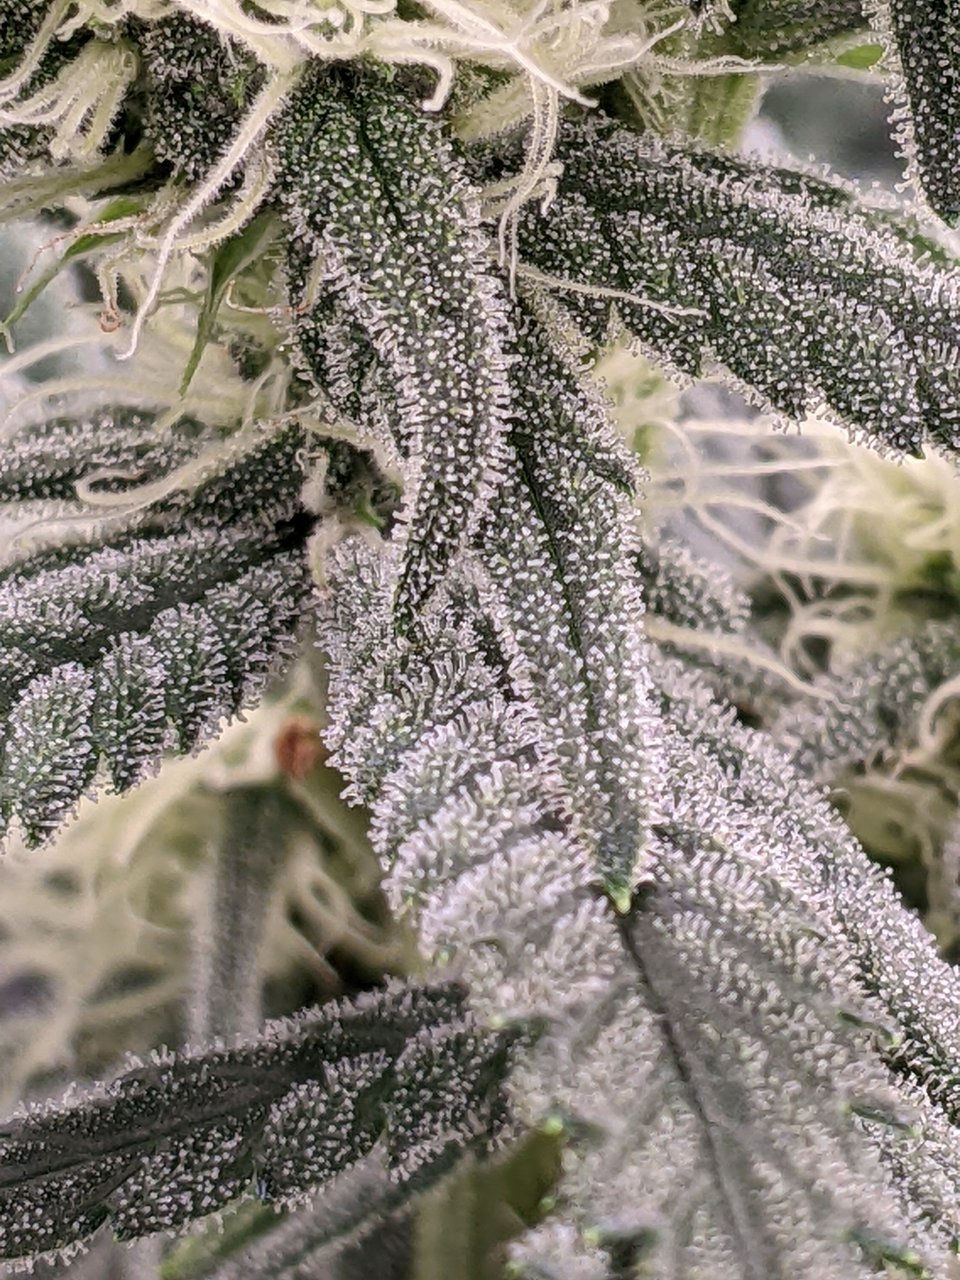 Grandmommy Purple - Herbies - Week 4 flower